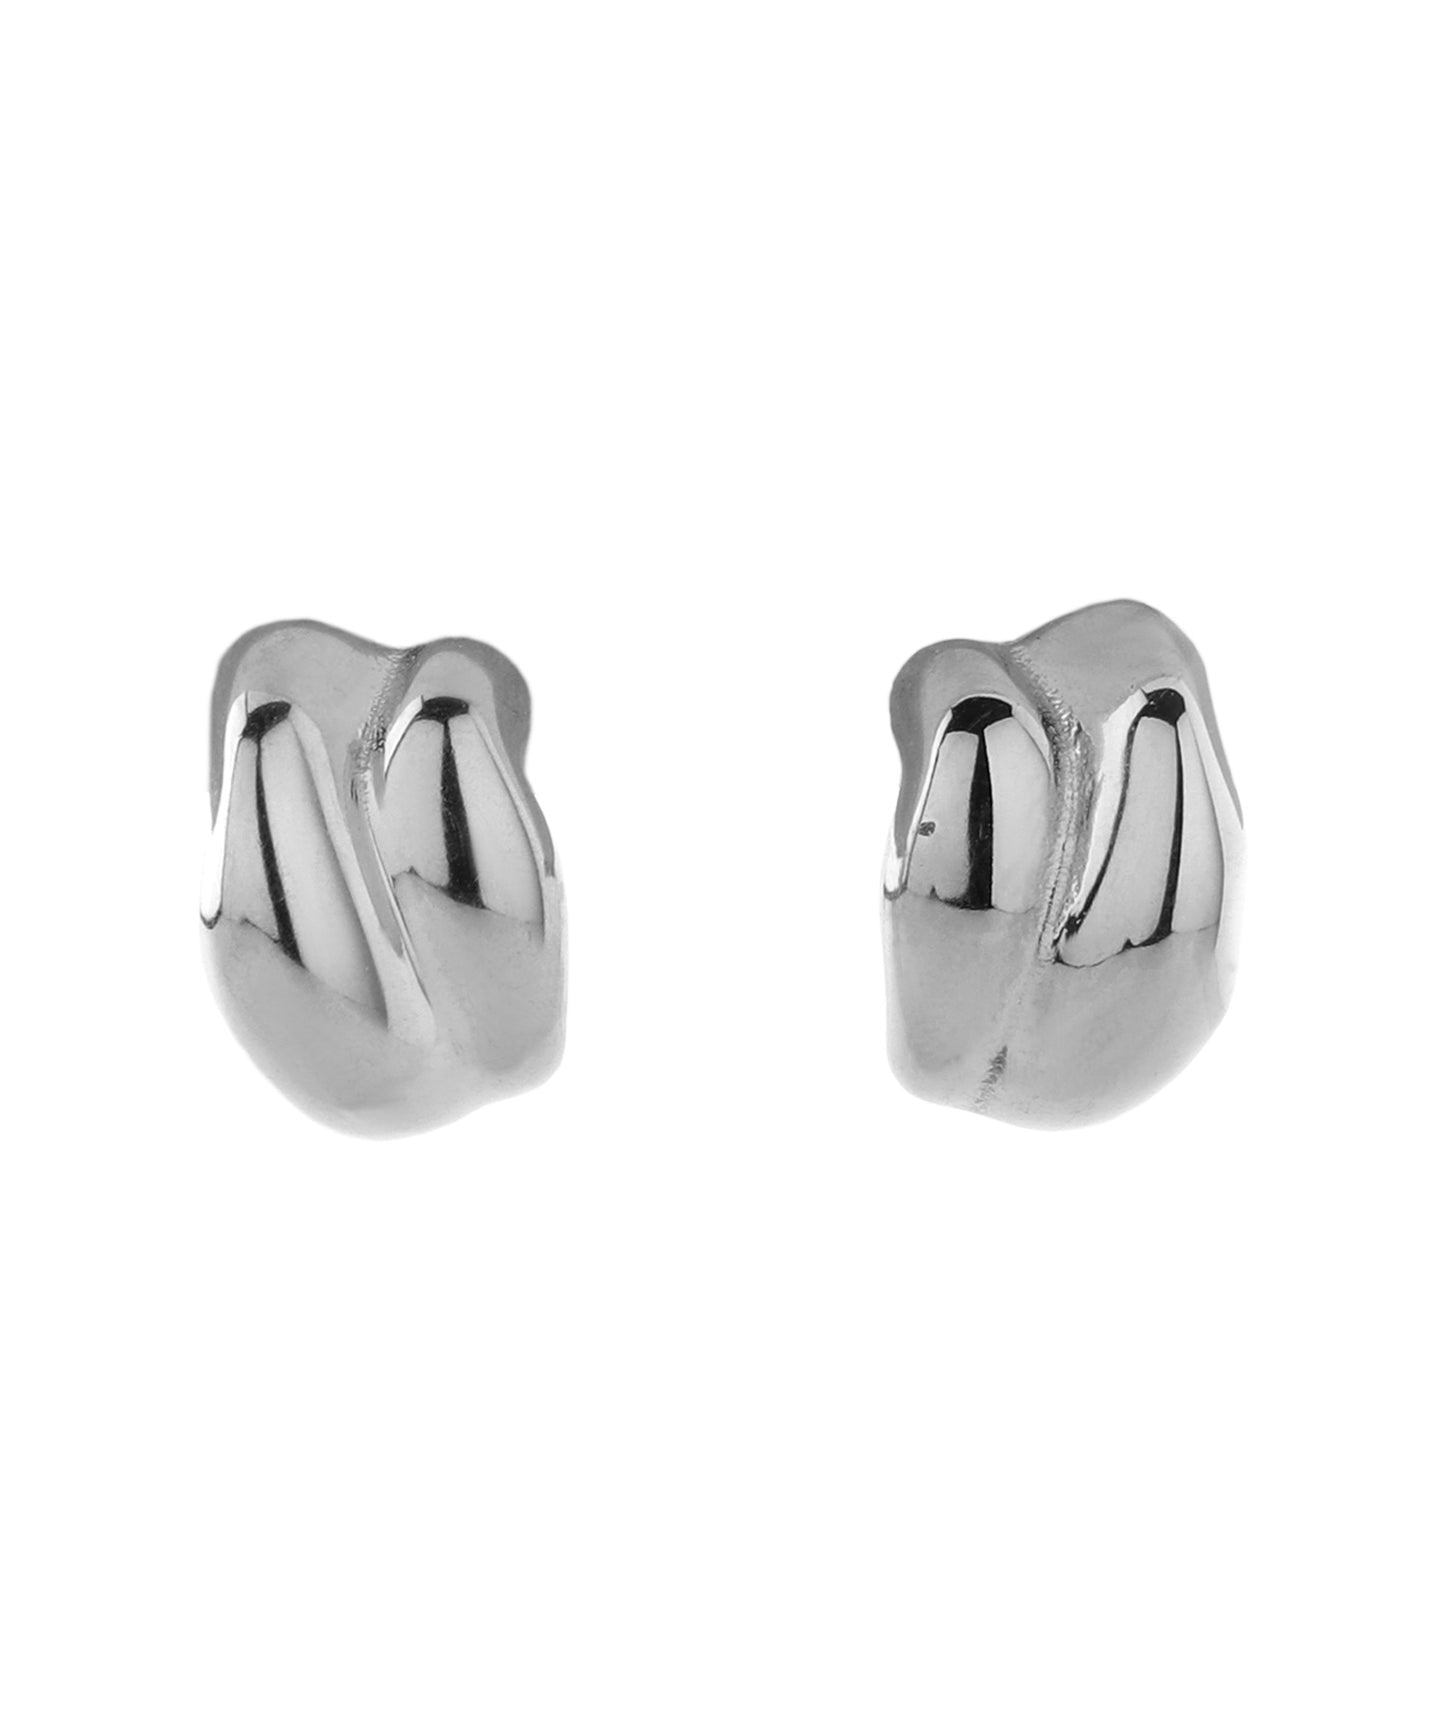 【Stainless Steel IP】Nuance Metal Earrings